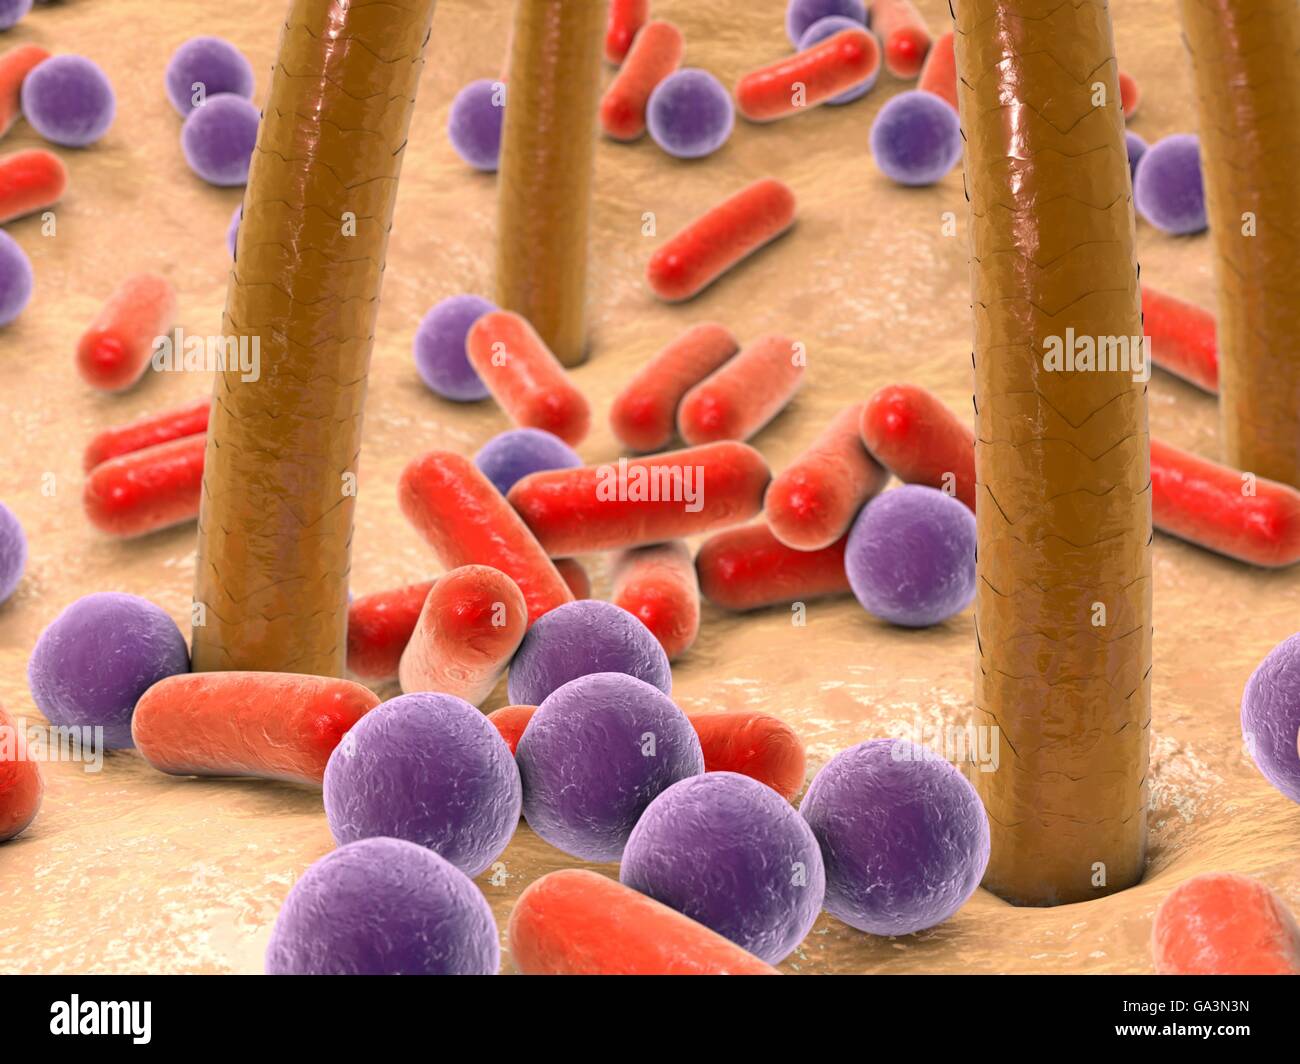 Les bactéries sur la peau à poils. L'oeuvre de l'ordinateur de bactéries (violet et rouge) sur la peau humaine. De nombreux types de bactéries sont présentes sur la peau humaine, surtout associés à des glandes sudoripares et les follicules pileux. Ils causent habituellement pas de problèmes, même si certains peuvent causer l'acné. Habituellement, les bactéries ne deviendra un problème si elles pénètrent la peau, par exemple par le biais d'une plaie ou une coupure. Banque D'Images